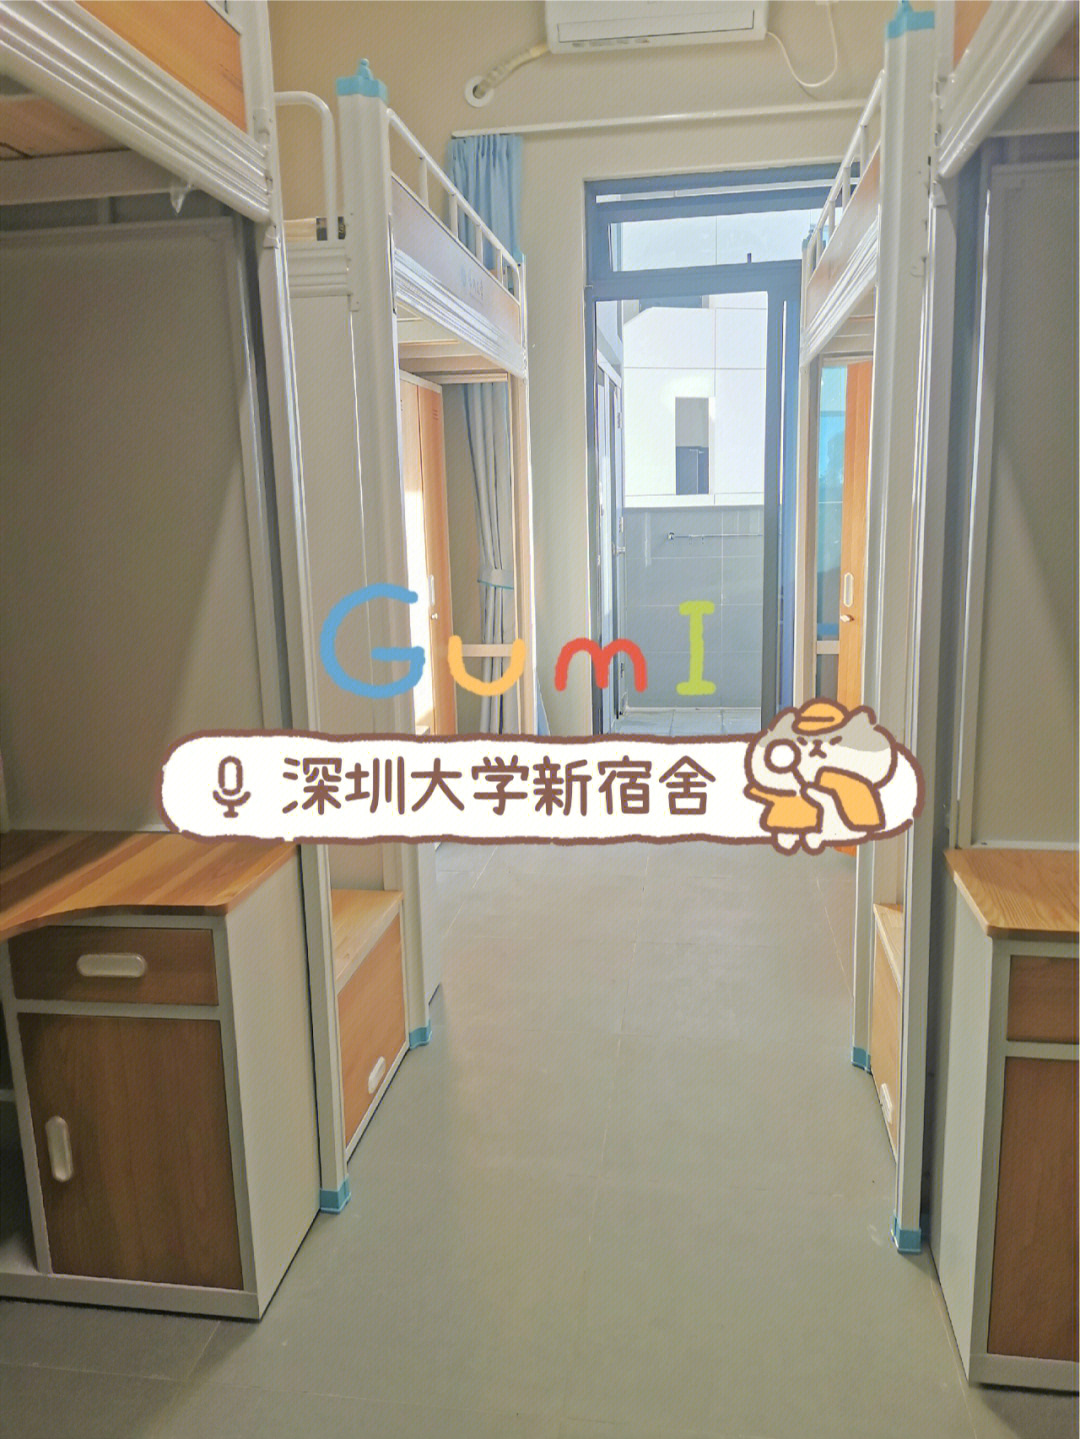 深圳大学丽湖二期宿舍是2021年8月底建成使用,目前提供给经管法三院